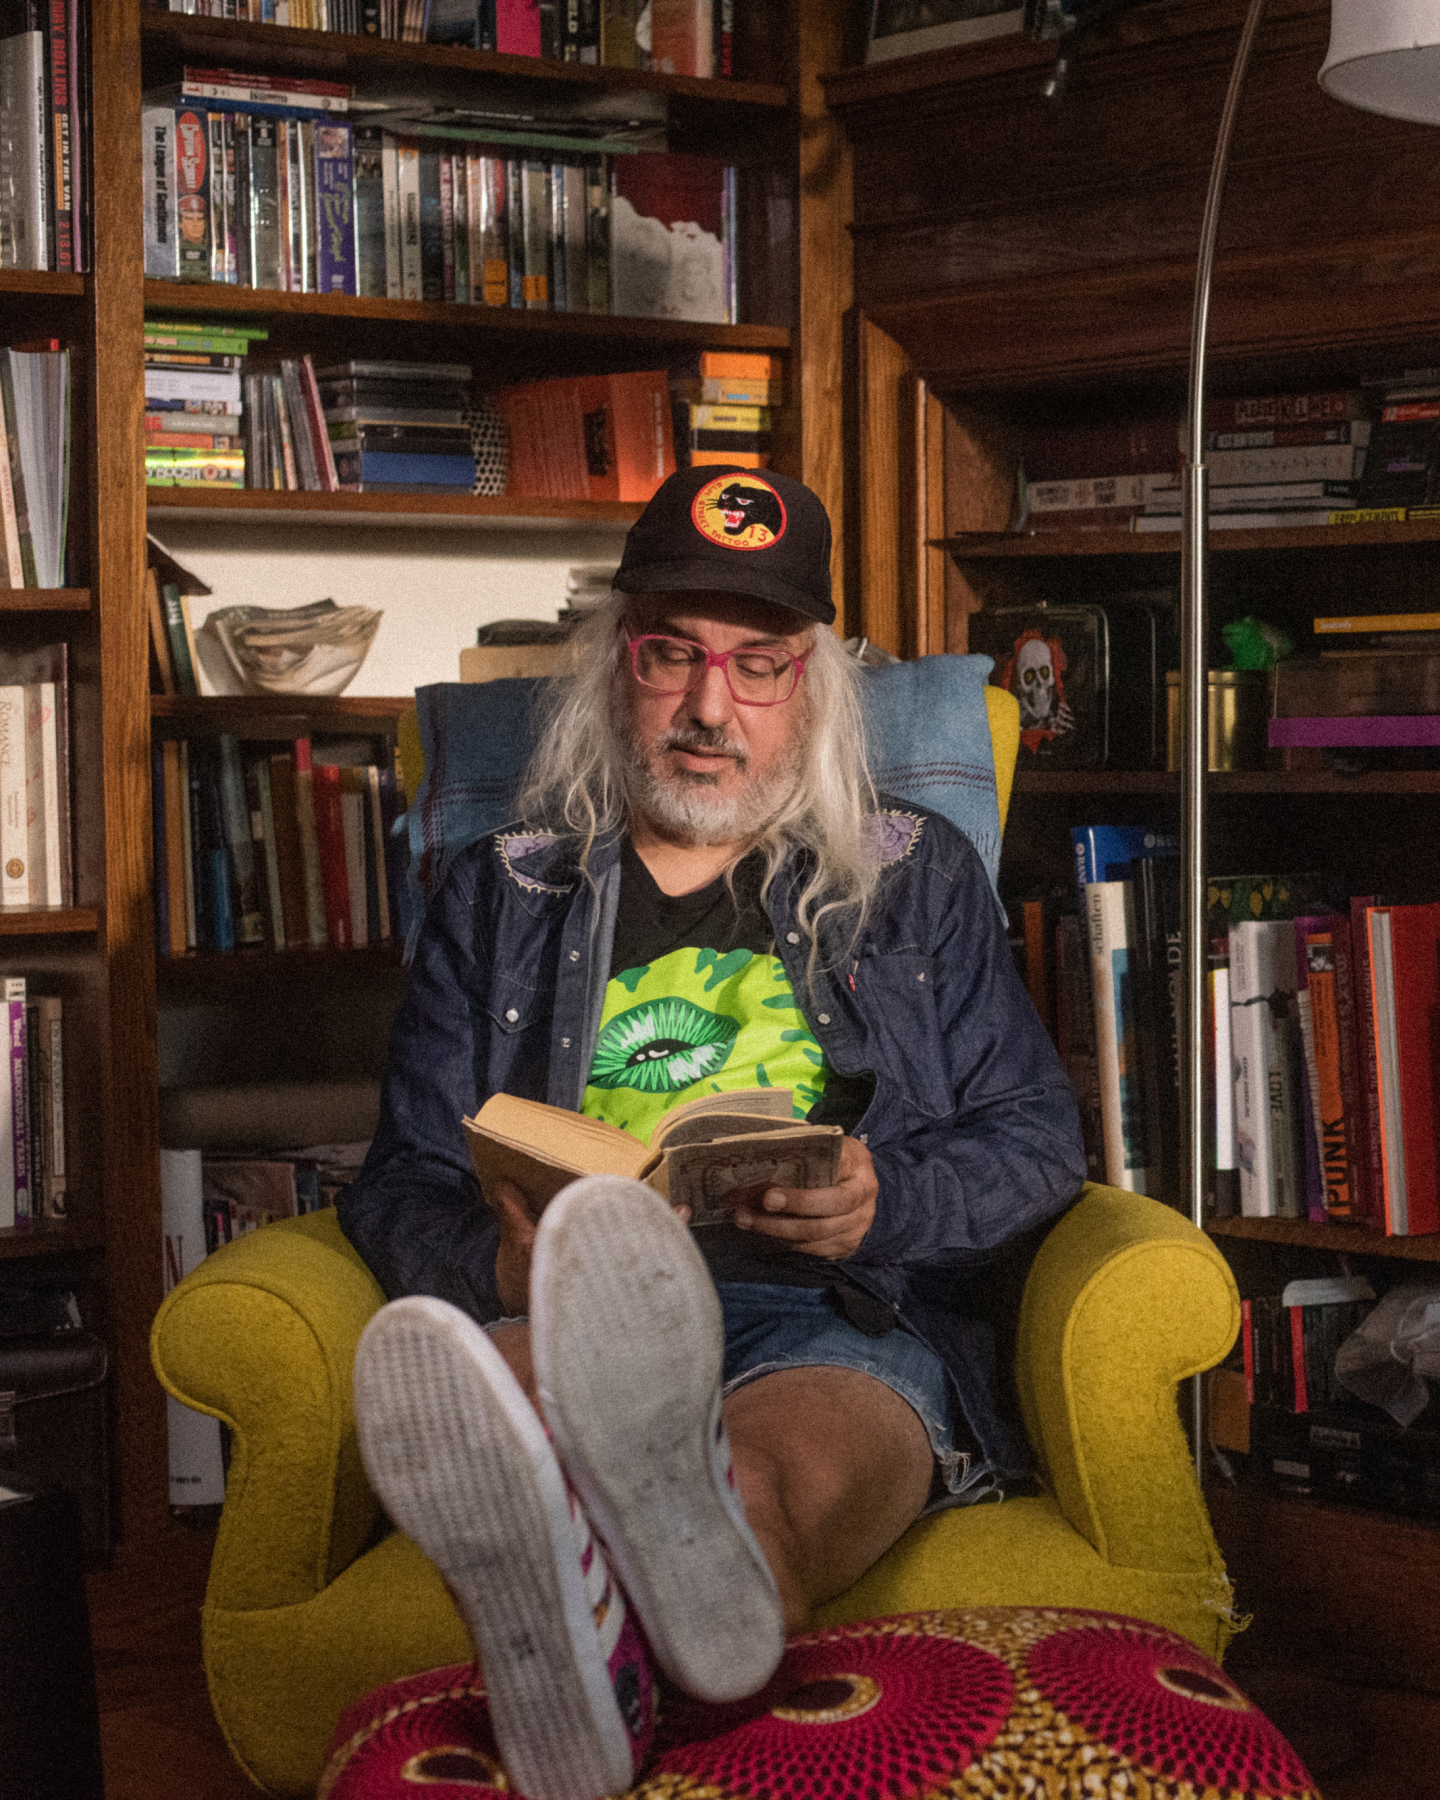 Imagen de J Mascis sentado en un sillón y leyendo